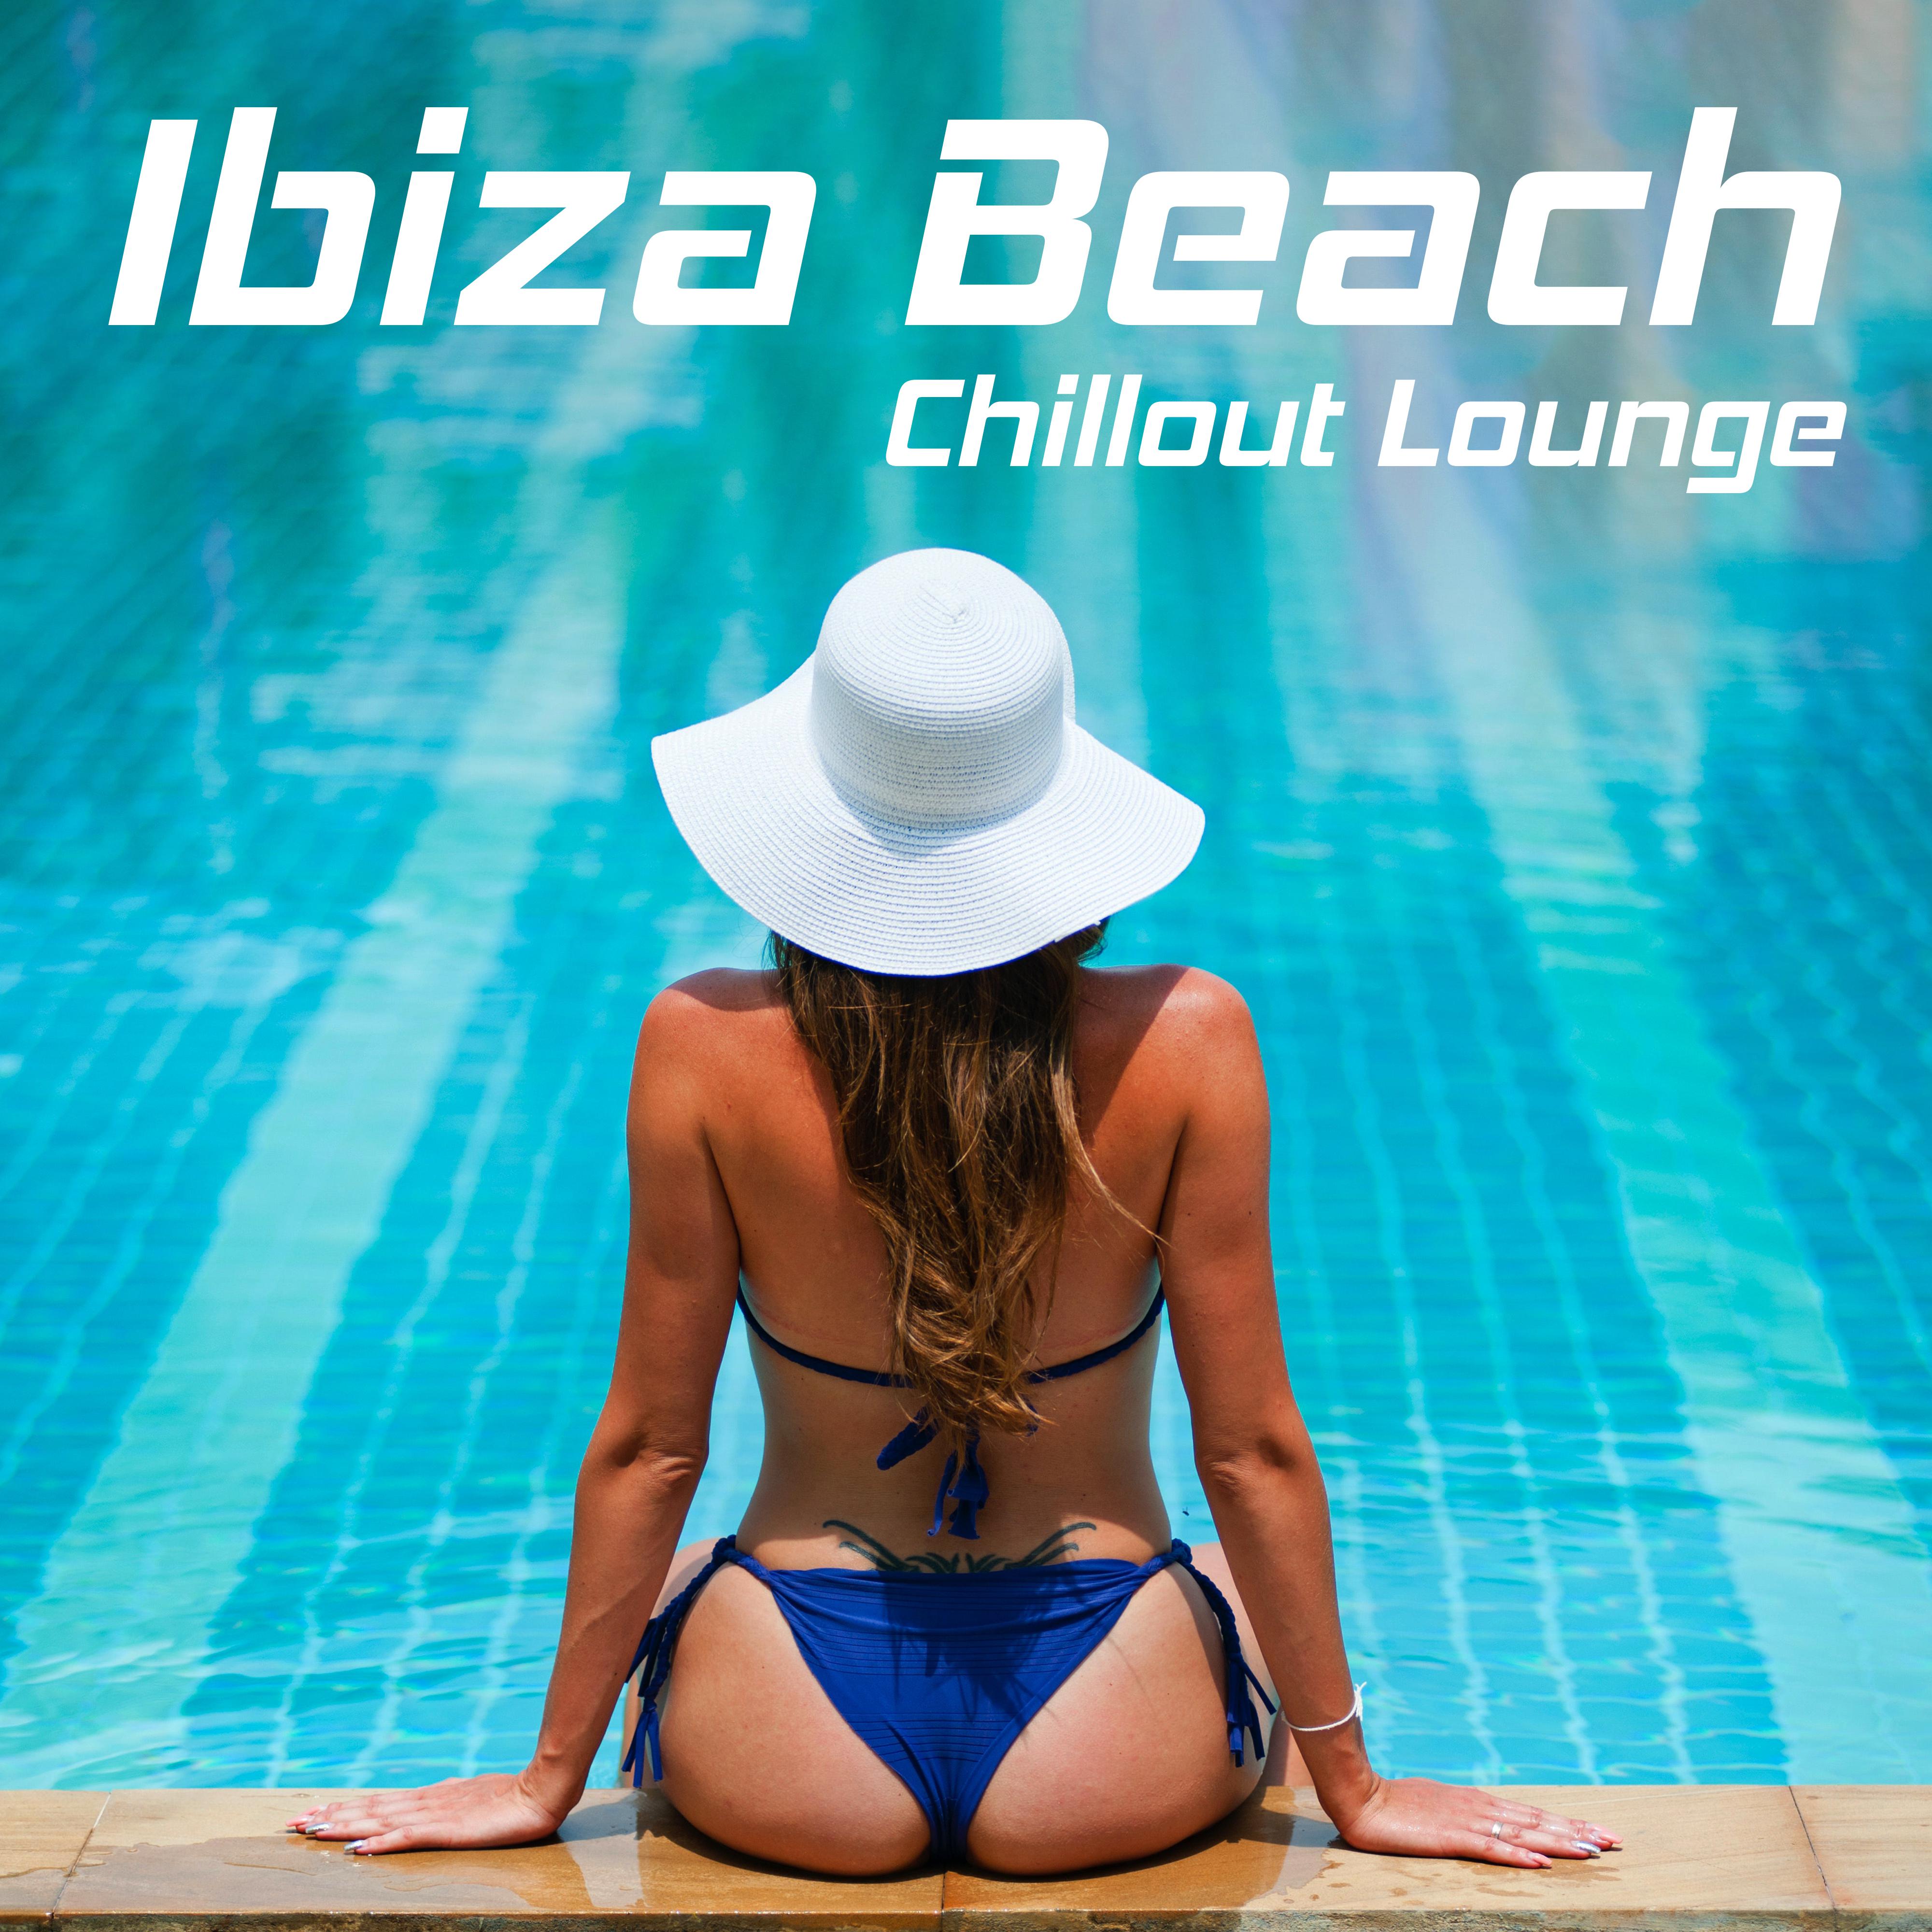 Ibiza Beach Chillout Lounge